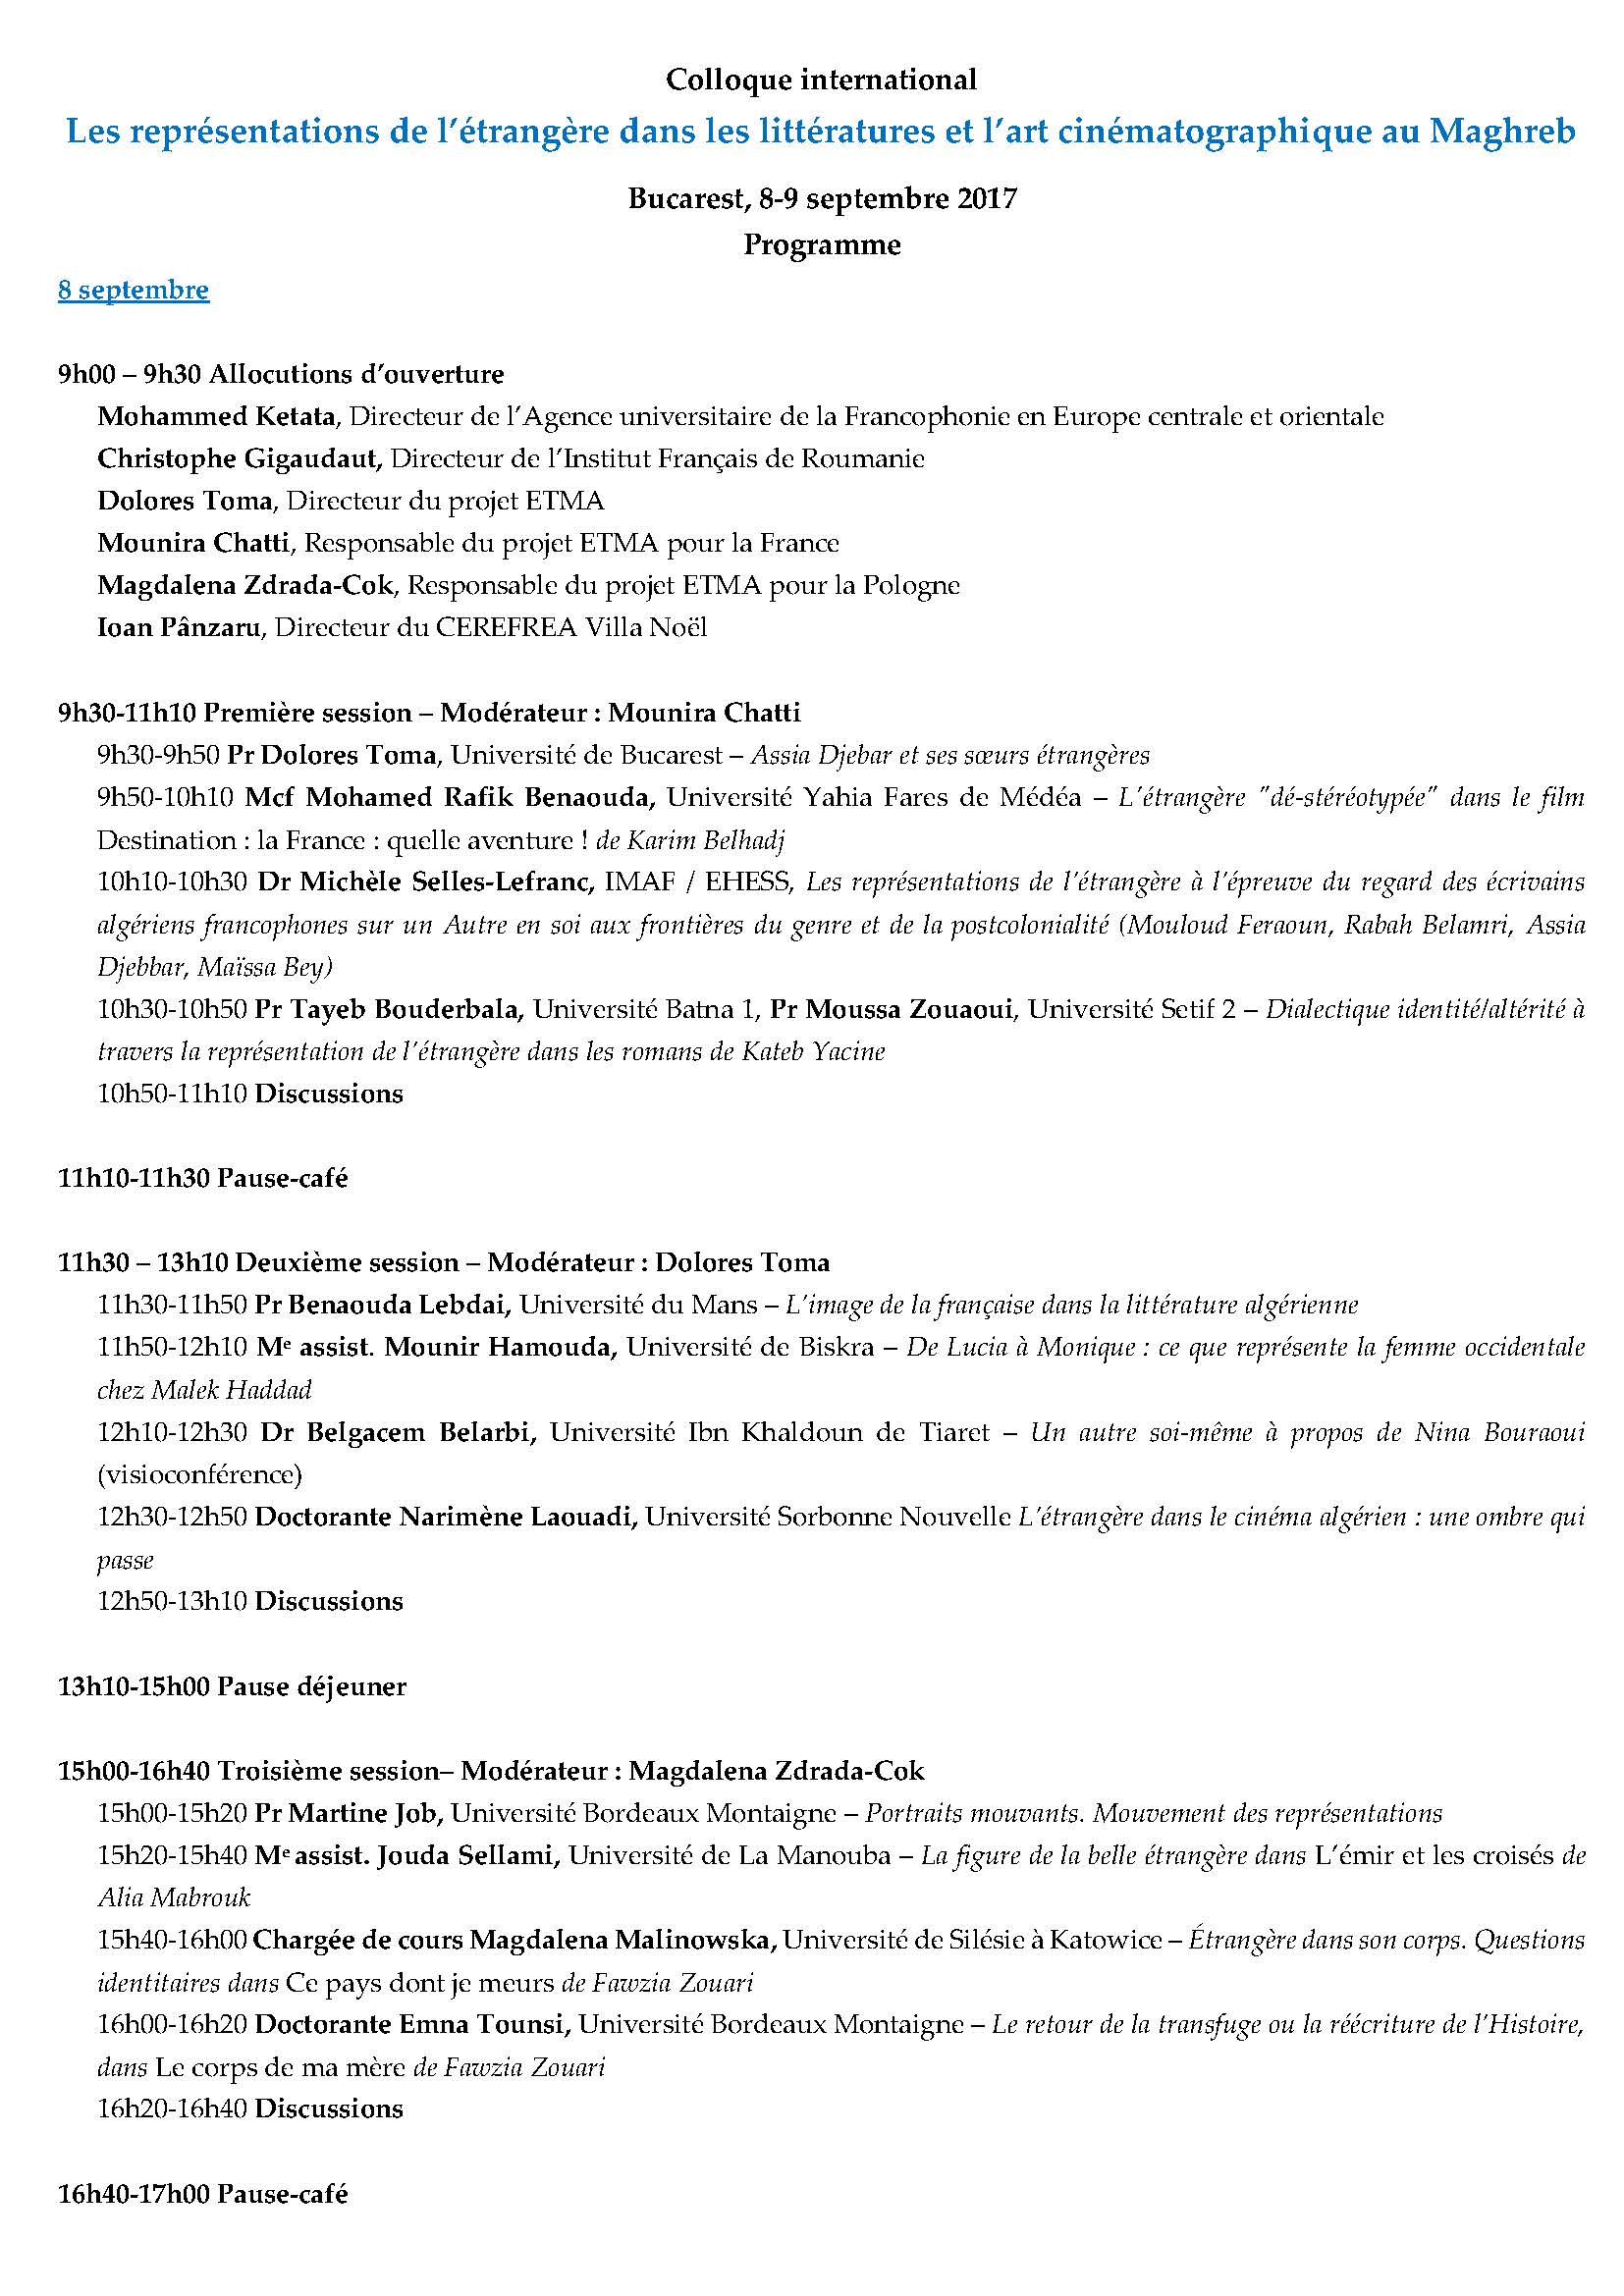 Programme colloque Bucarest 8 9septembre2017